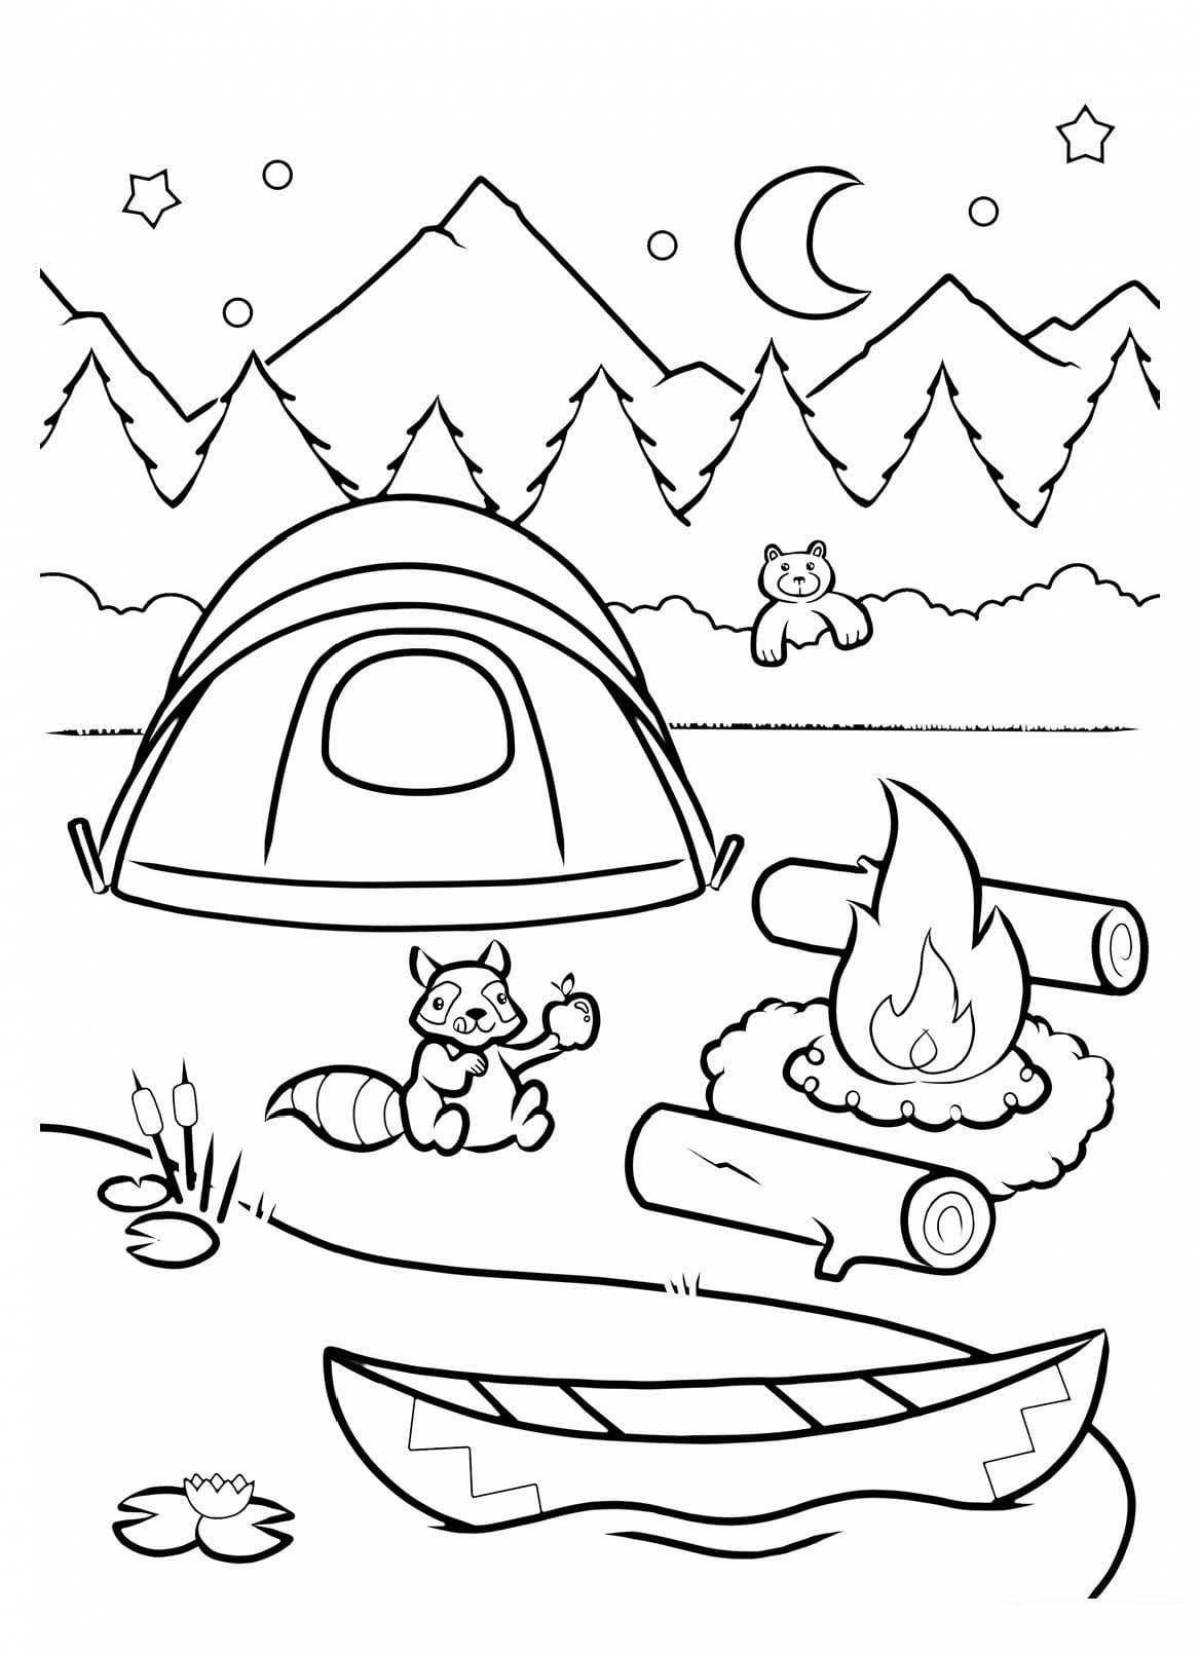 Camping for kids. Раскраска поход для детей. Палатка раскраска. Раскраска поход с палатками. Палатка раскраска для детей.